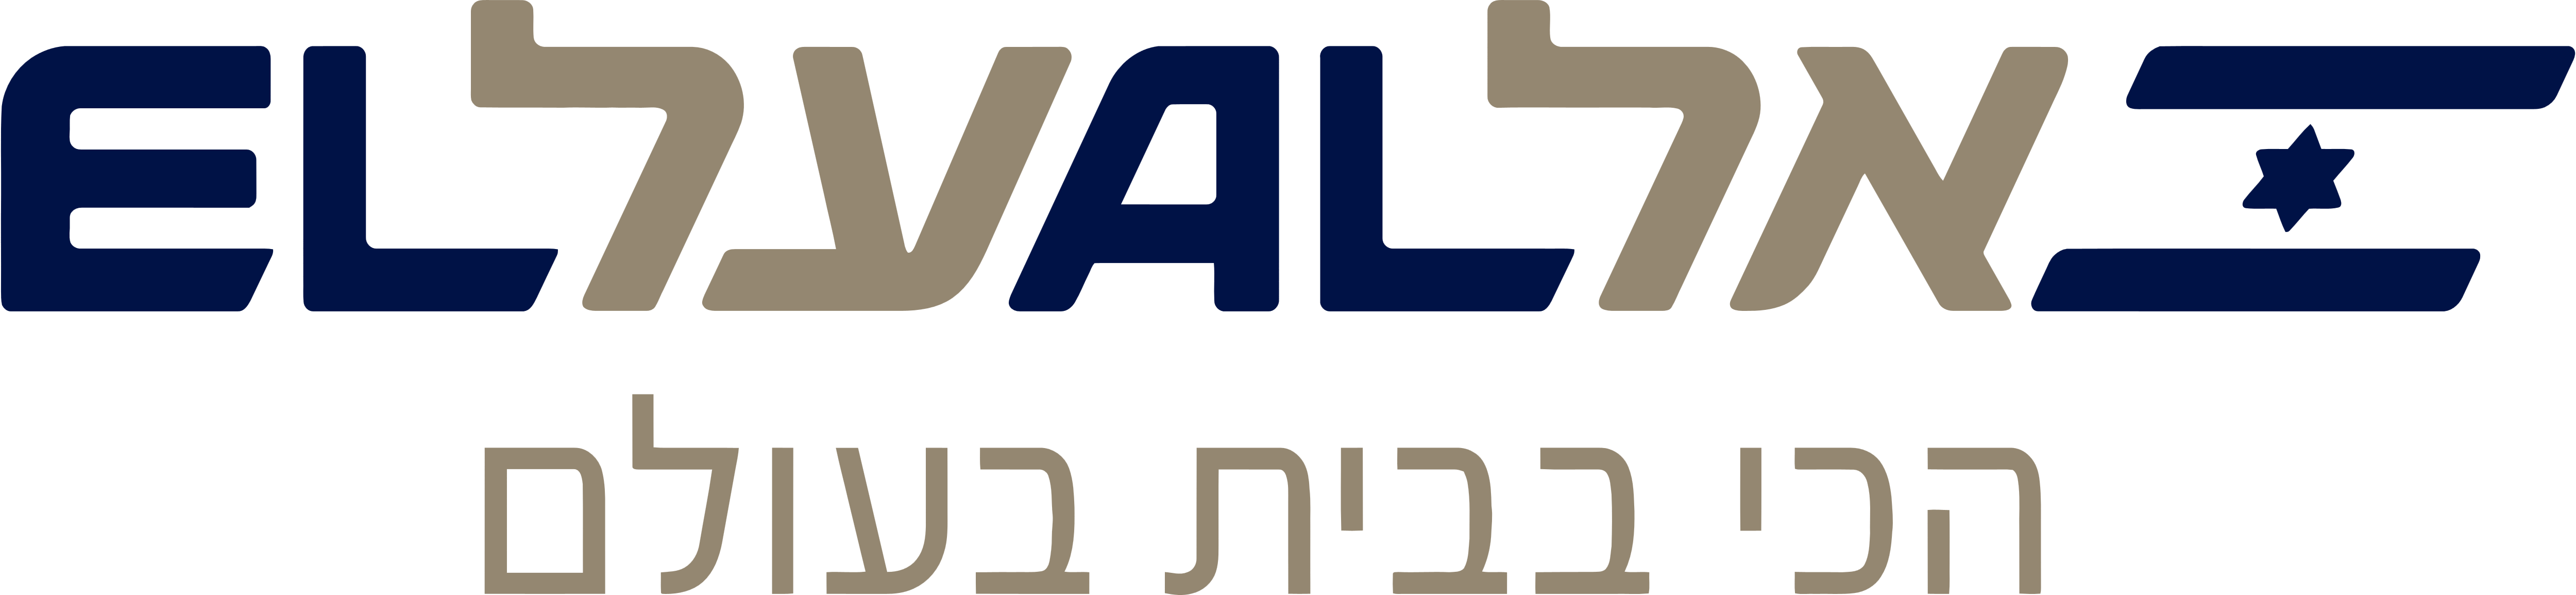 El Al Airlines Logo - El Al Israel Airlines Logo Clipart (5000x1154), Png Download